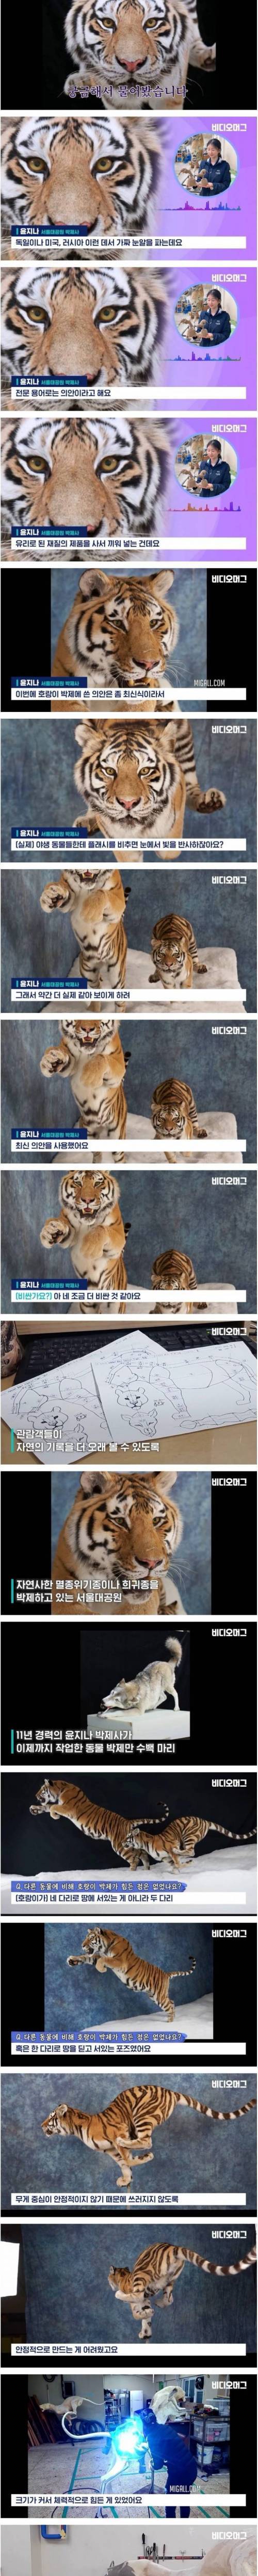 [스압] 자연사한 시베리아 호랑이 박제한 서울대공원